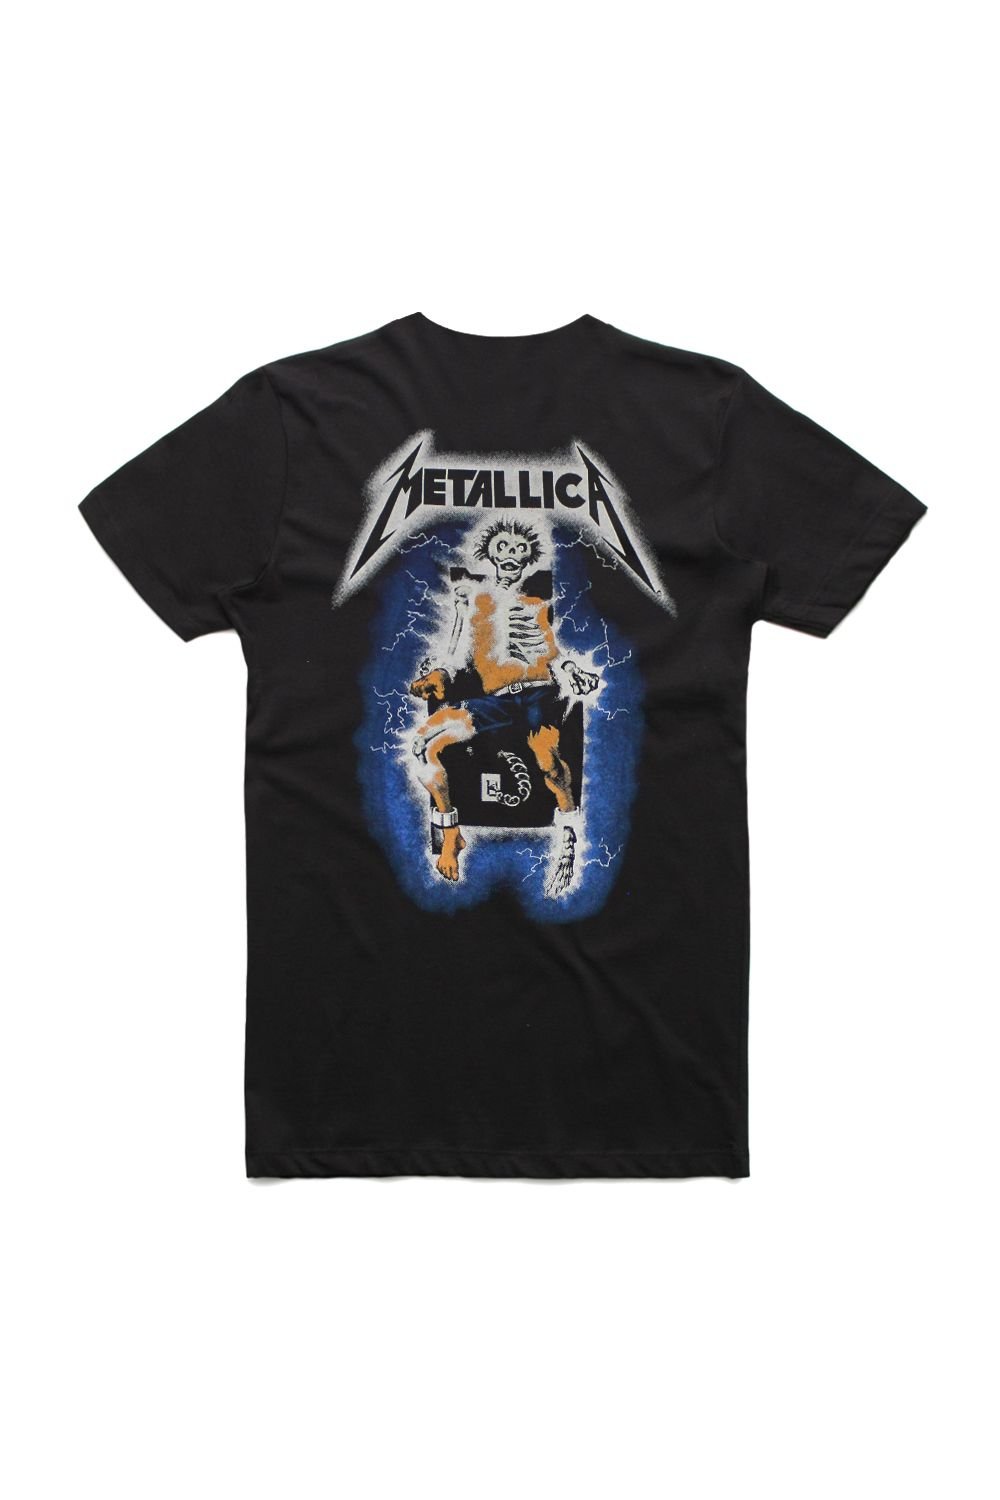 Metallica — Metallica Official Merchandise — Band T-Shirts